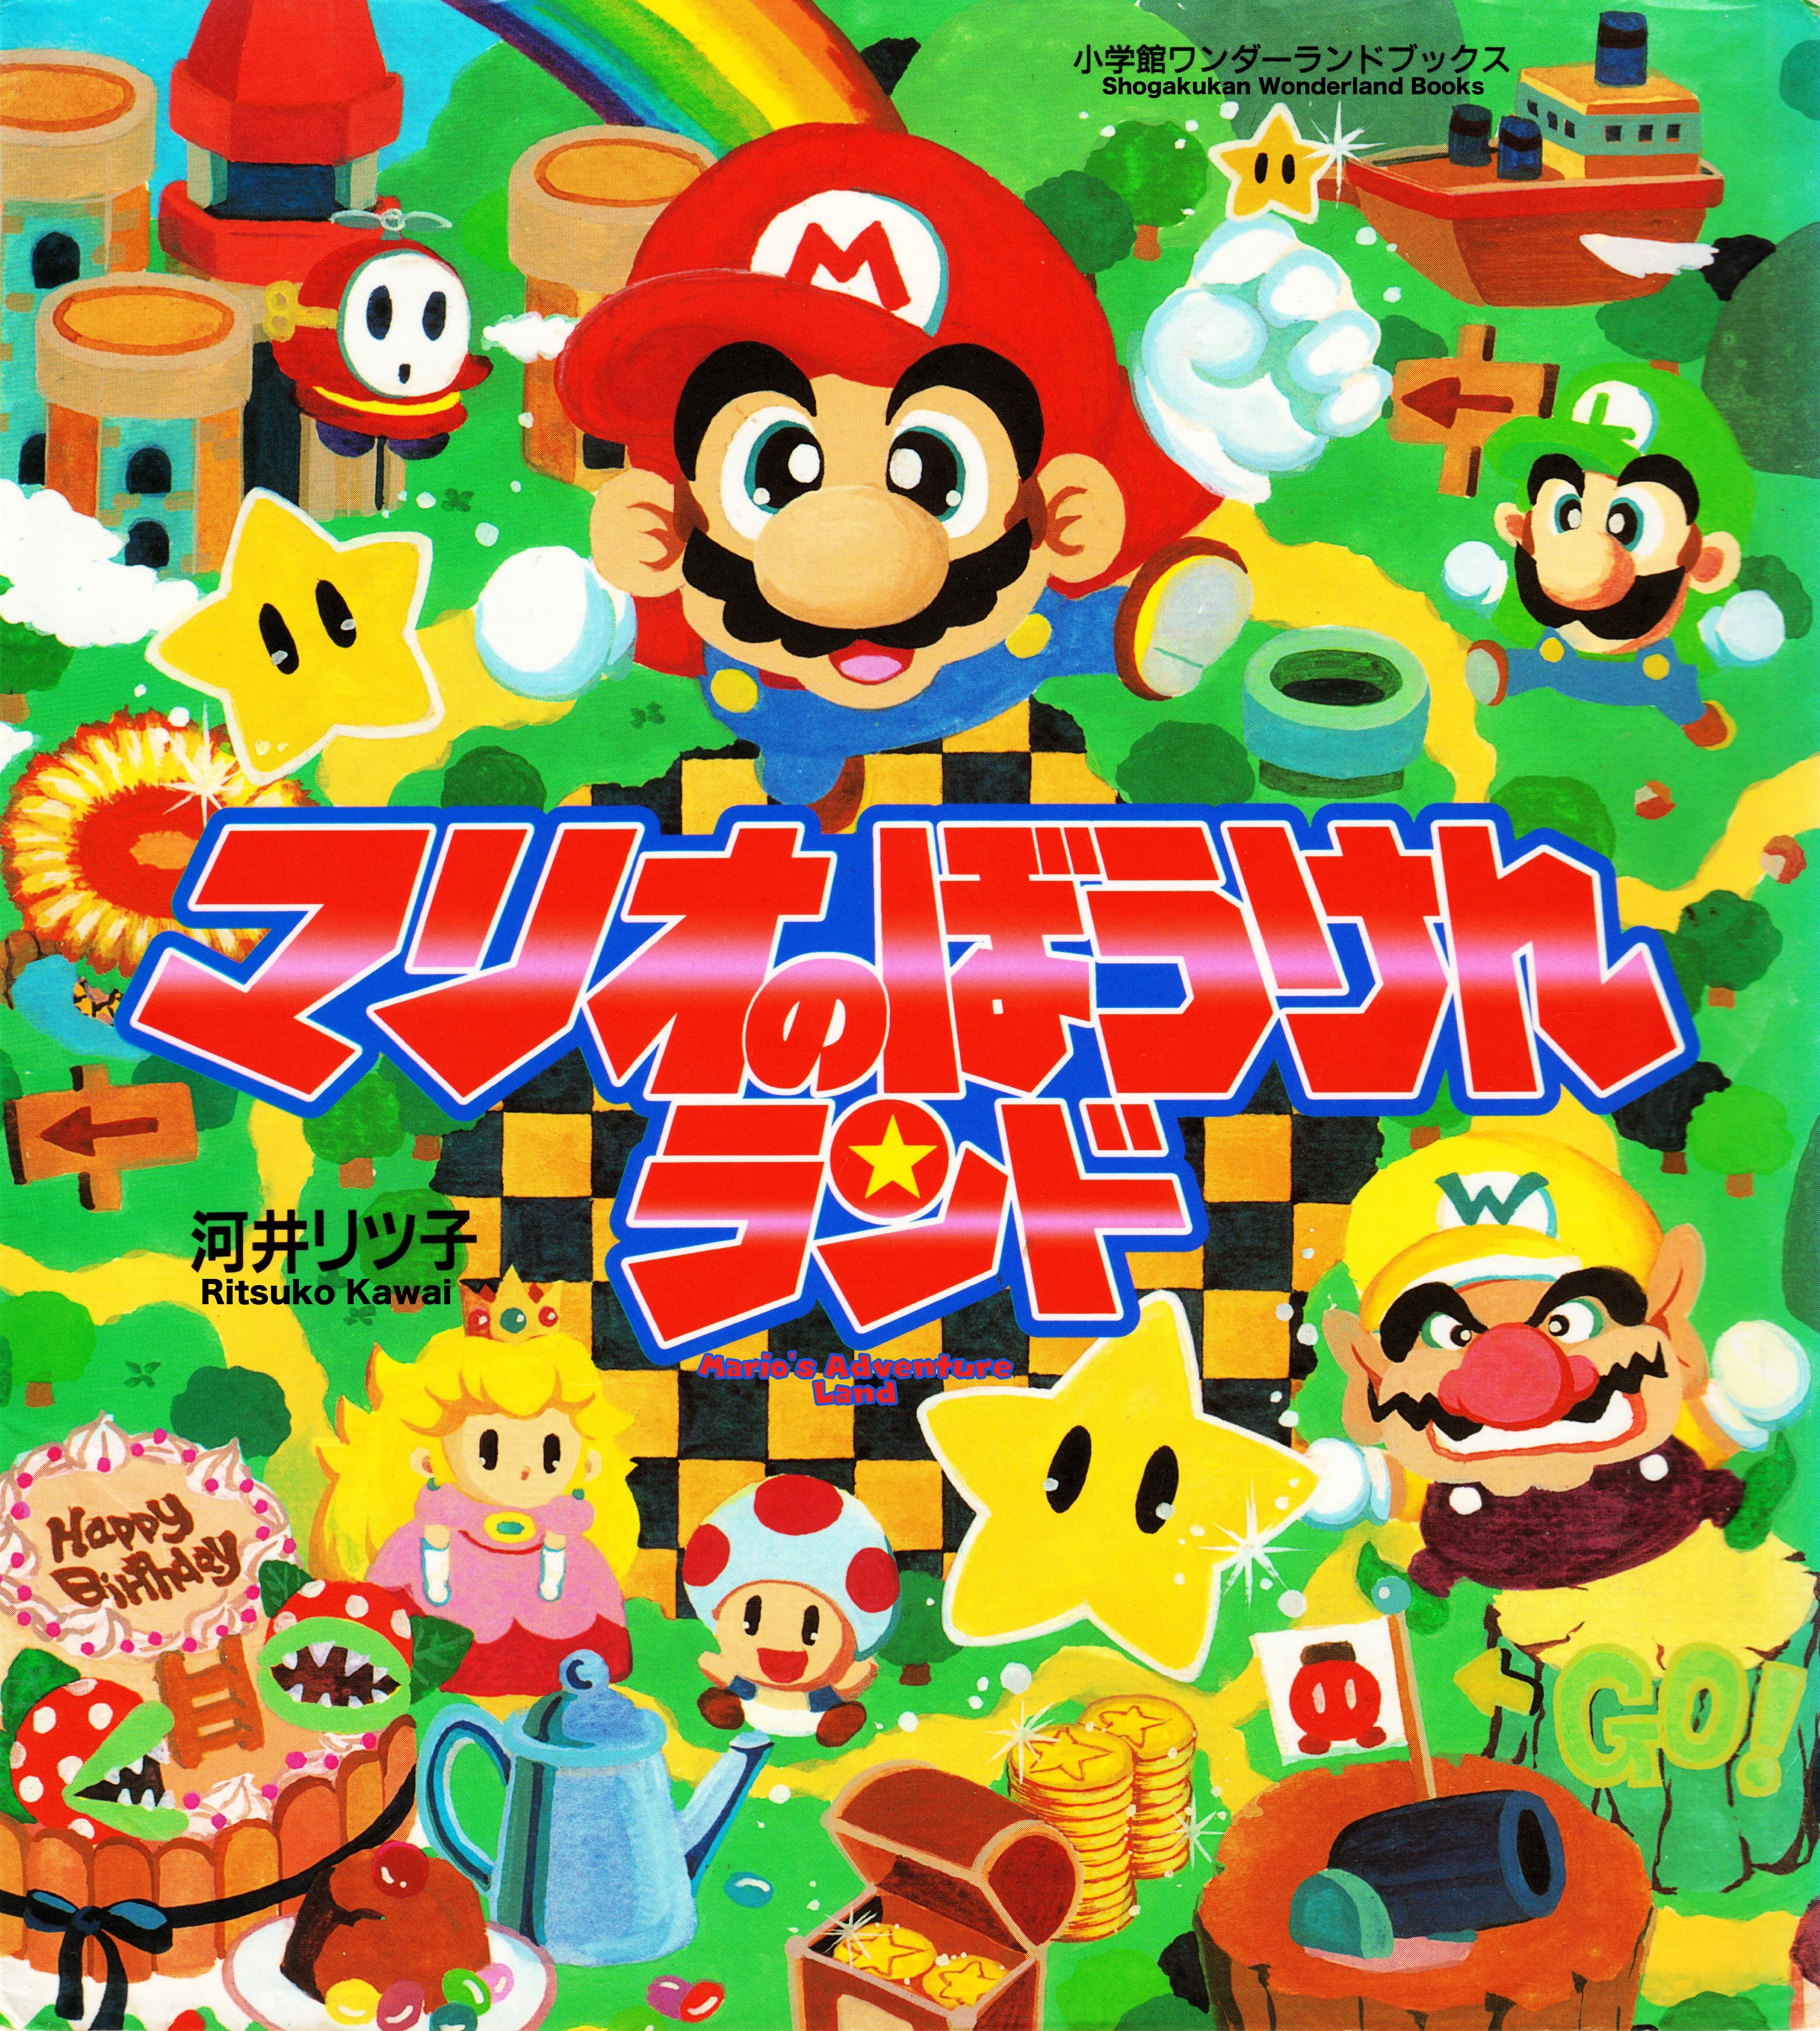 Mario's Adventure Land cover 0